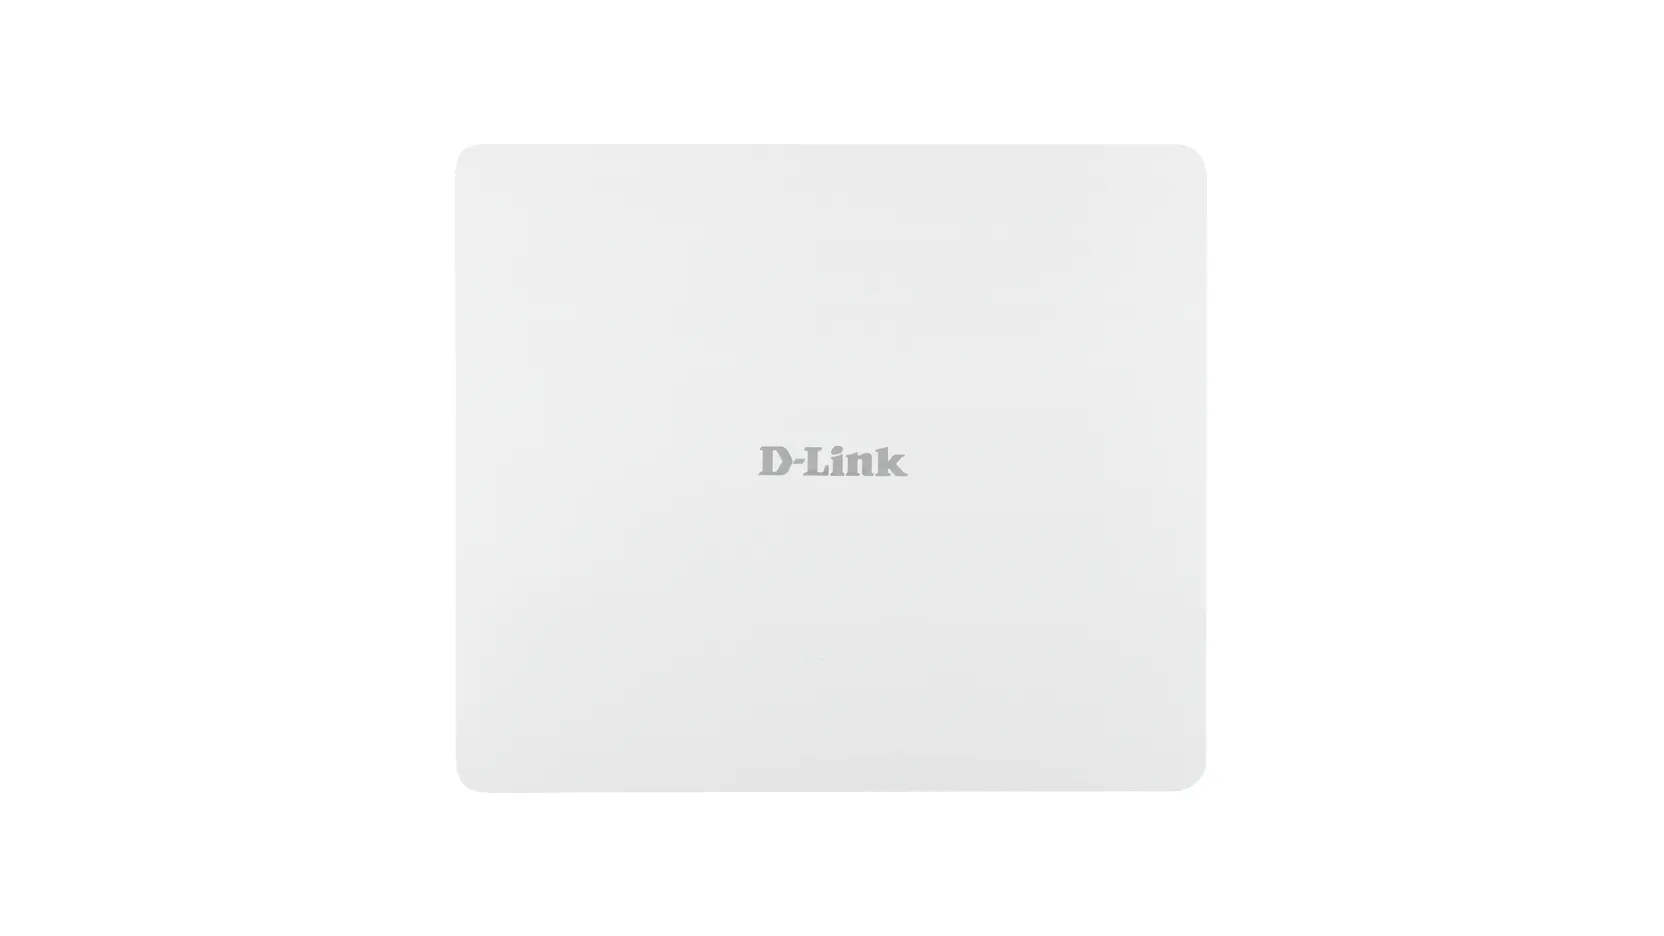 Vente D-LINK Accesspoint AC1200 Wave2 Dual Band PoE Outdoor D-Link au meilleur prix - visuel 4